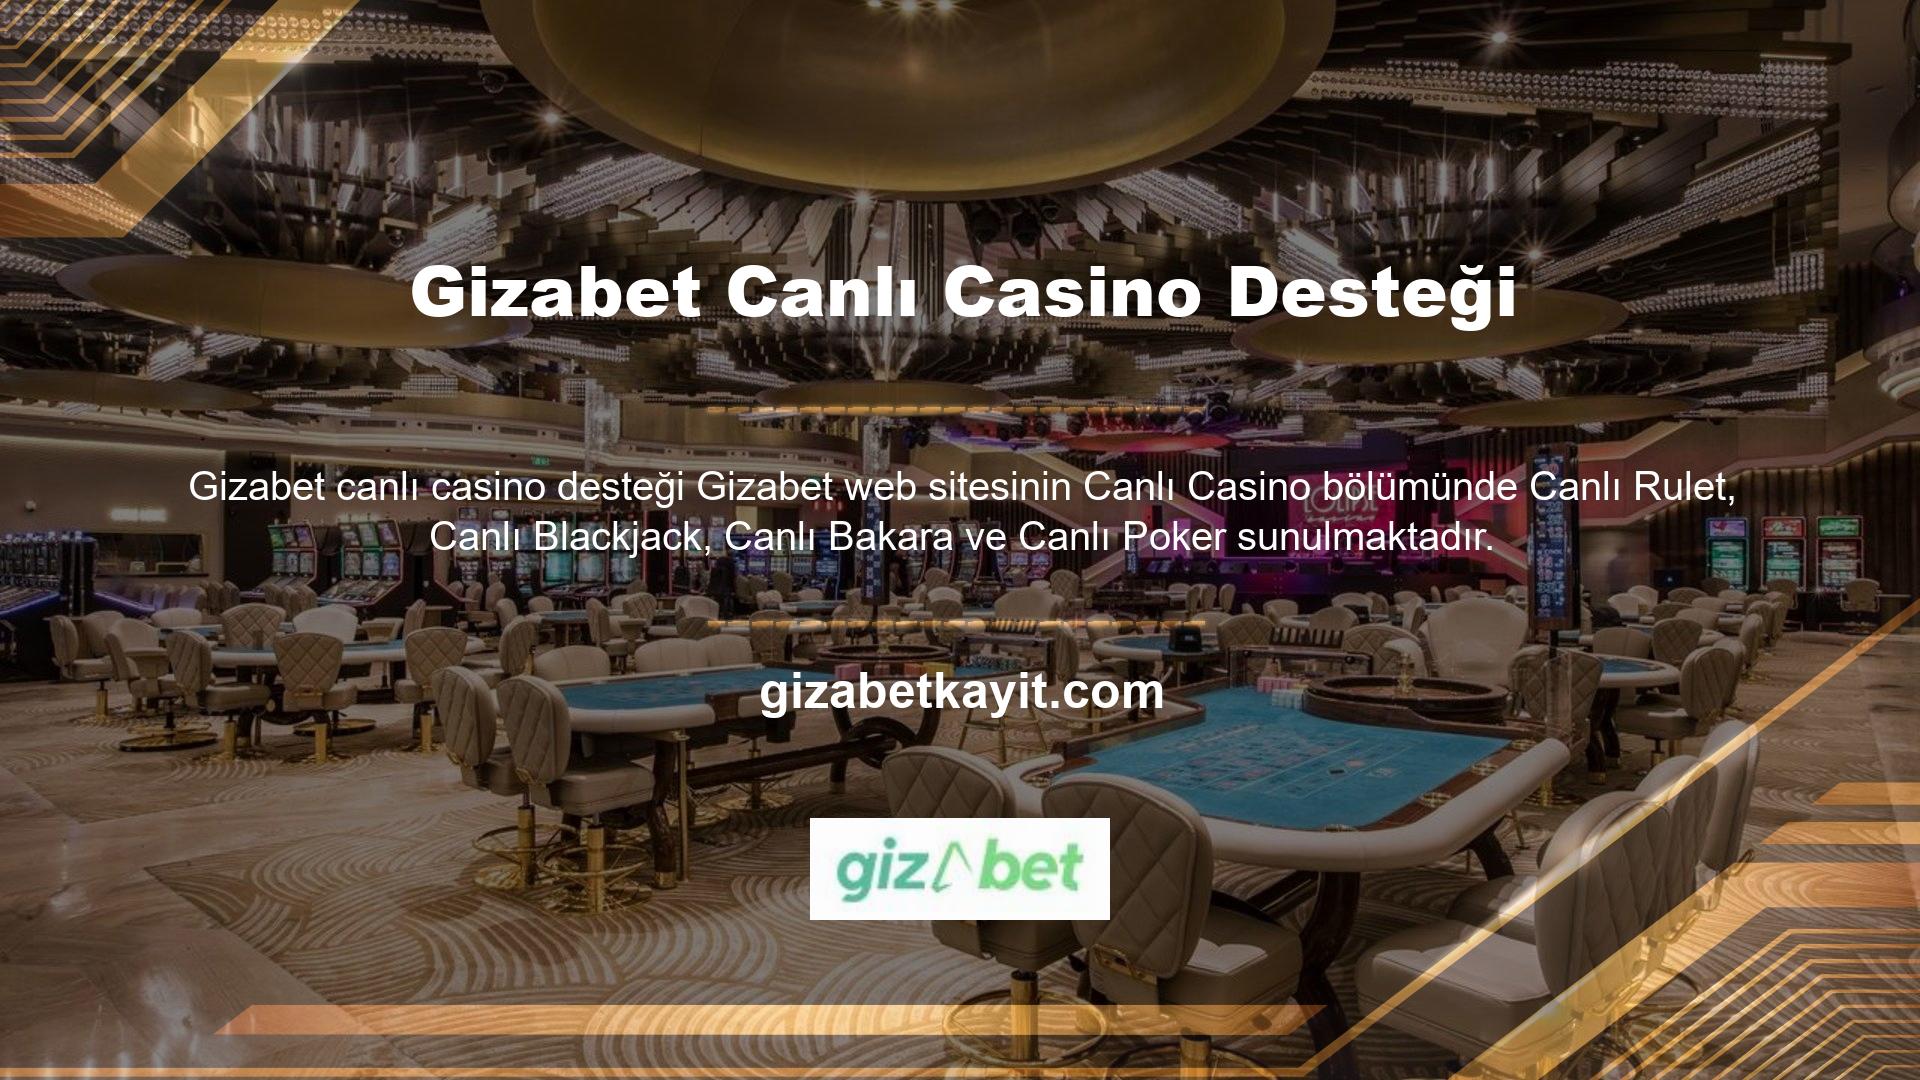 Bu Gizabet canlı casino desteği alternatifler ile hem eğlenme hem de güzel vakit geçirme şansına sahip olurken aynı zamanda para kazanma imkanına da sahipsiniz